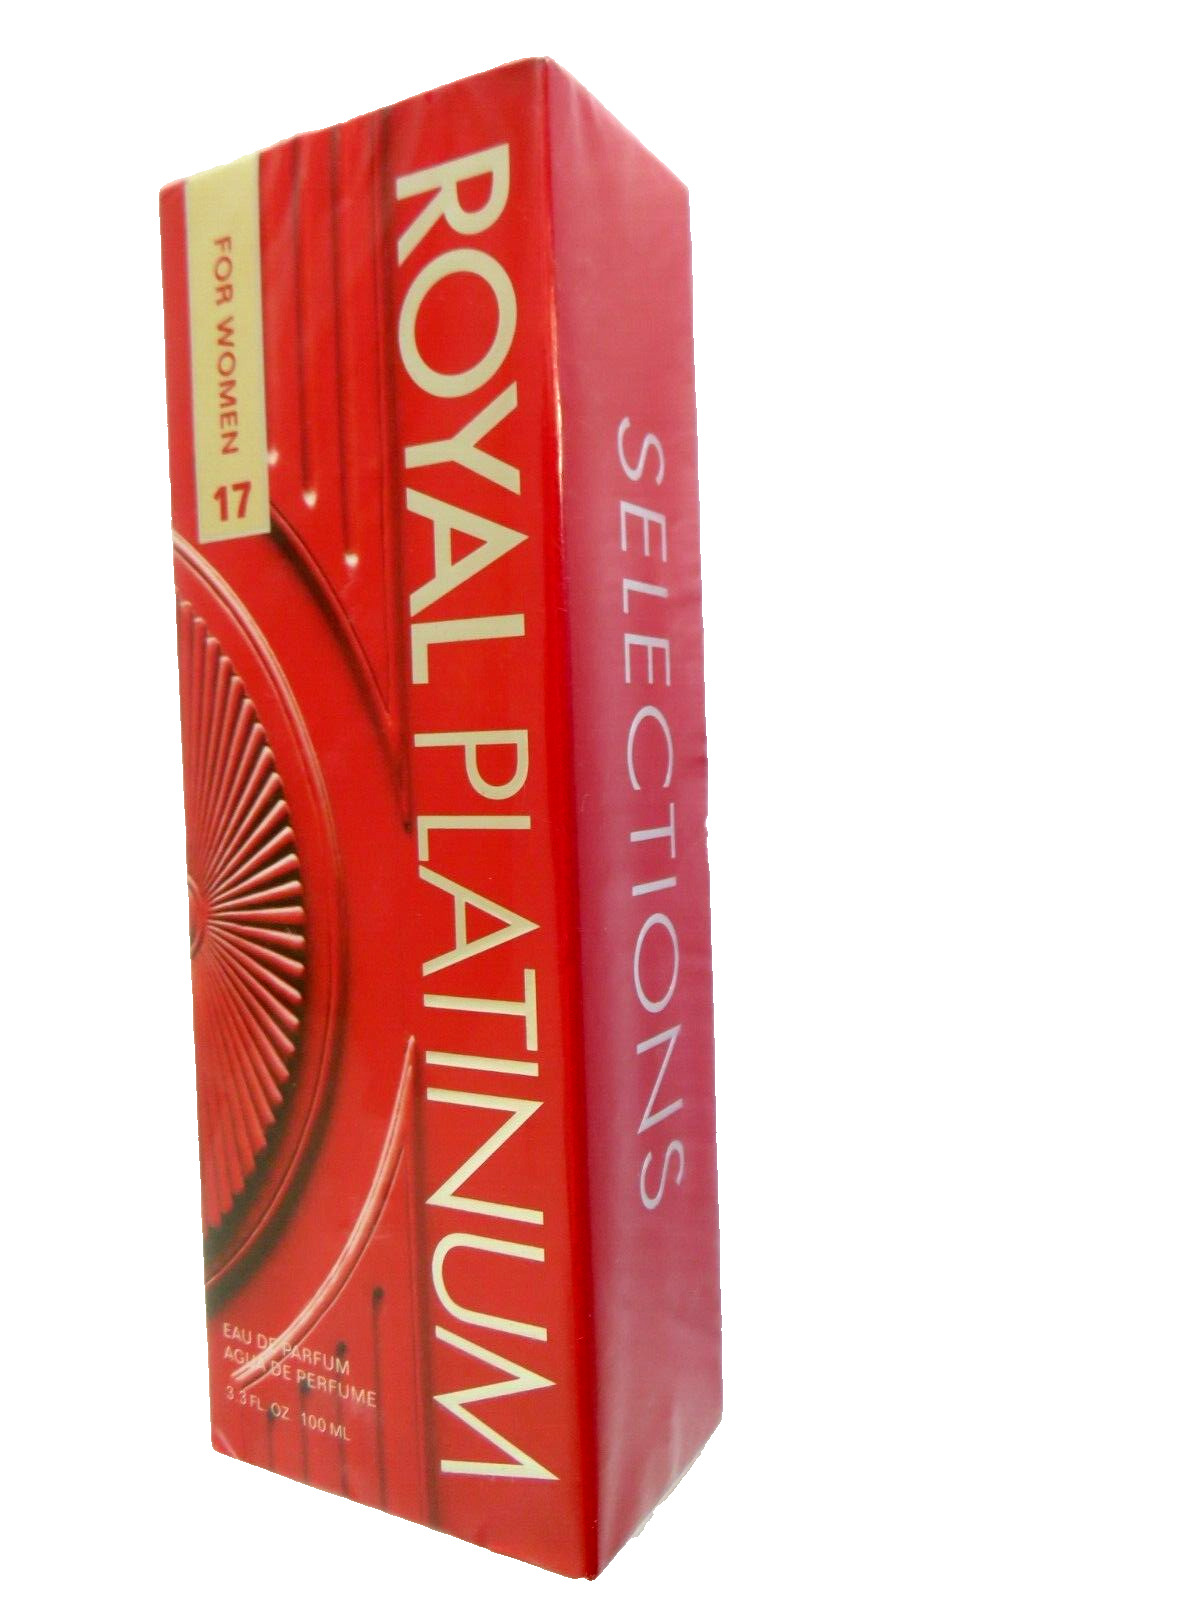 NEW Vintage  Royal Platinum Women 17 Eau De Parfum Spray 3.3 fl oz 100ML